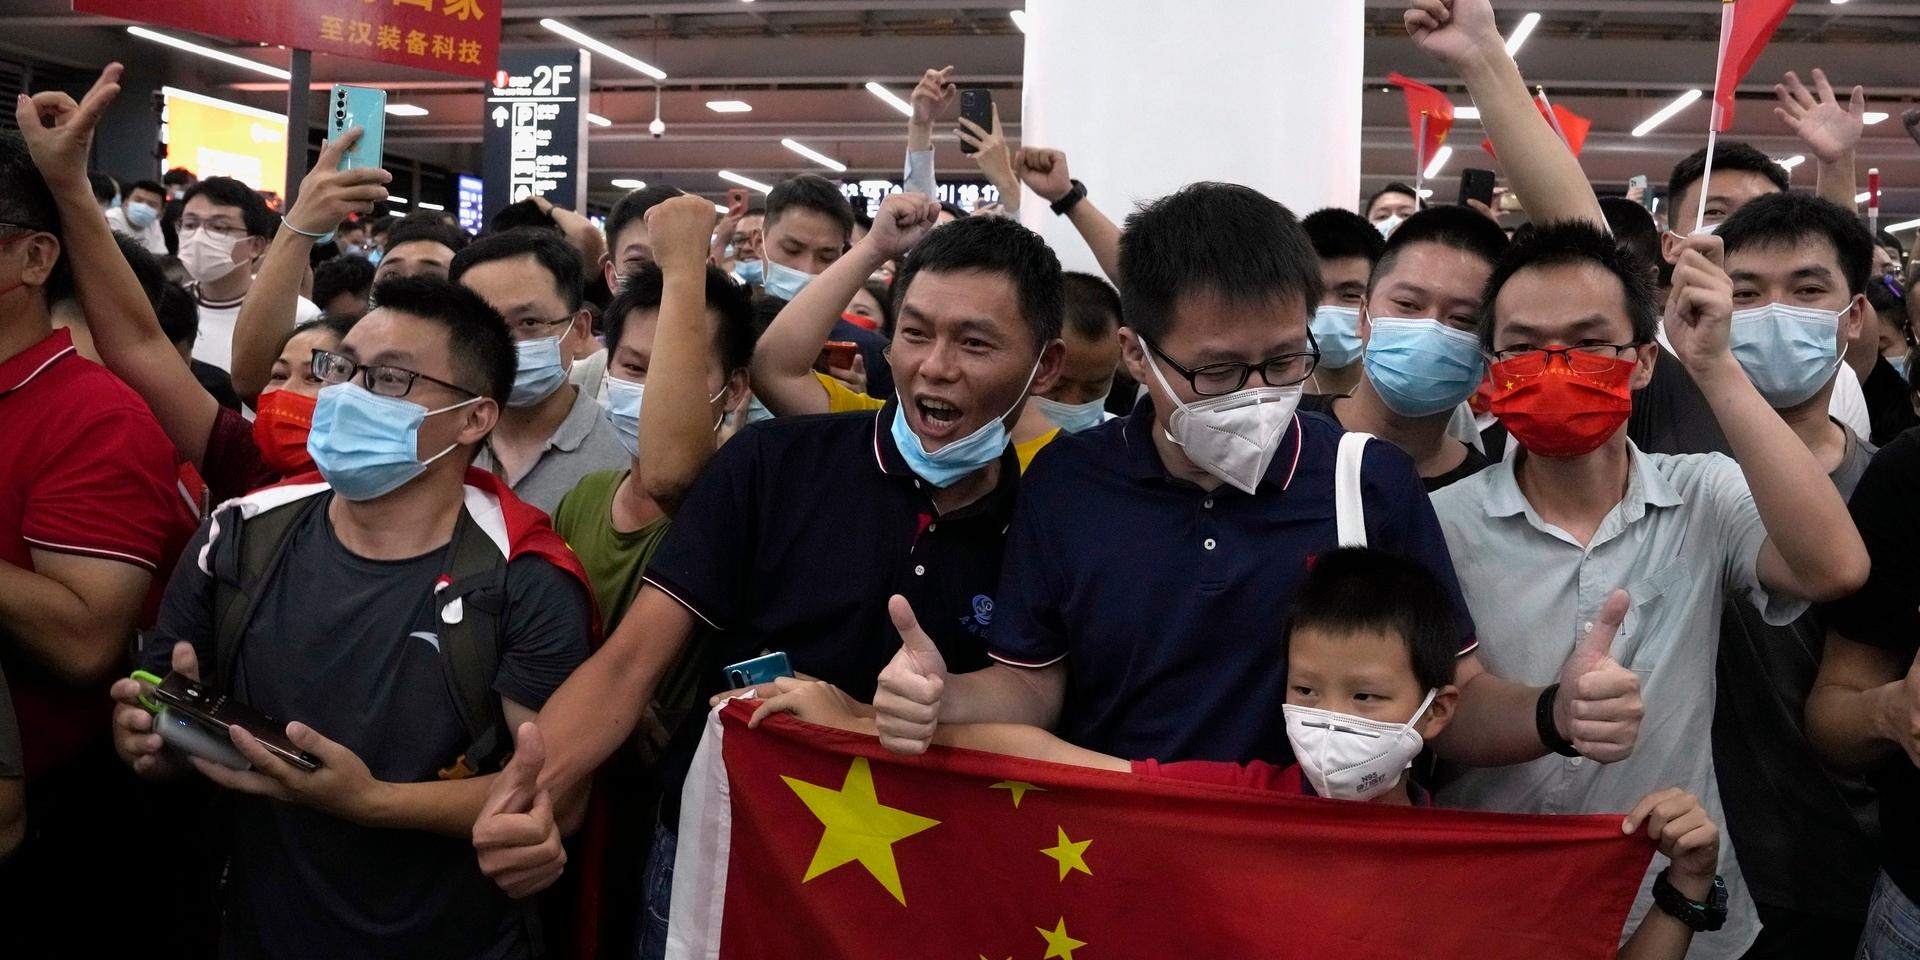 På flygplatsen i Shenzen väntade röda mattan och en välkomstkommitté på att Huaweichefen Meng Wanzhou skulle landa på kinesisk mark.